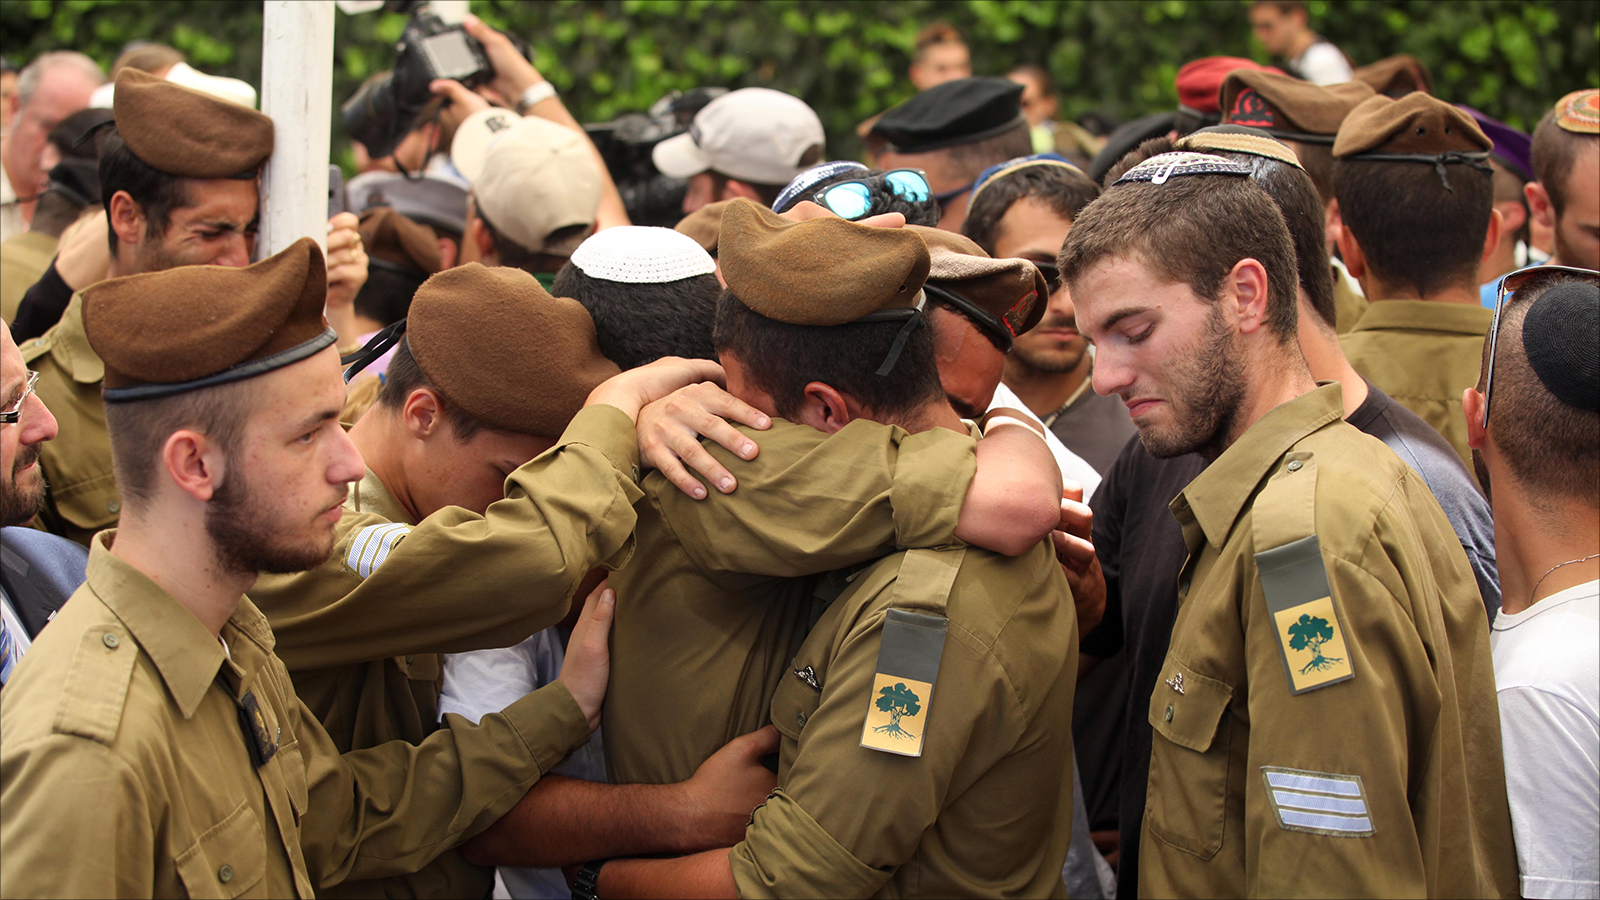 ‪جنود إسرائيليون ينتحبون في جنازة زميل لهم قتل في العدوان على غزة‬ جنود إسرائيليون ينتحبون في جنازة زميل لهم قتل في العدوان على غزة (الأوروبية-أرشيف)